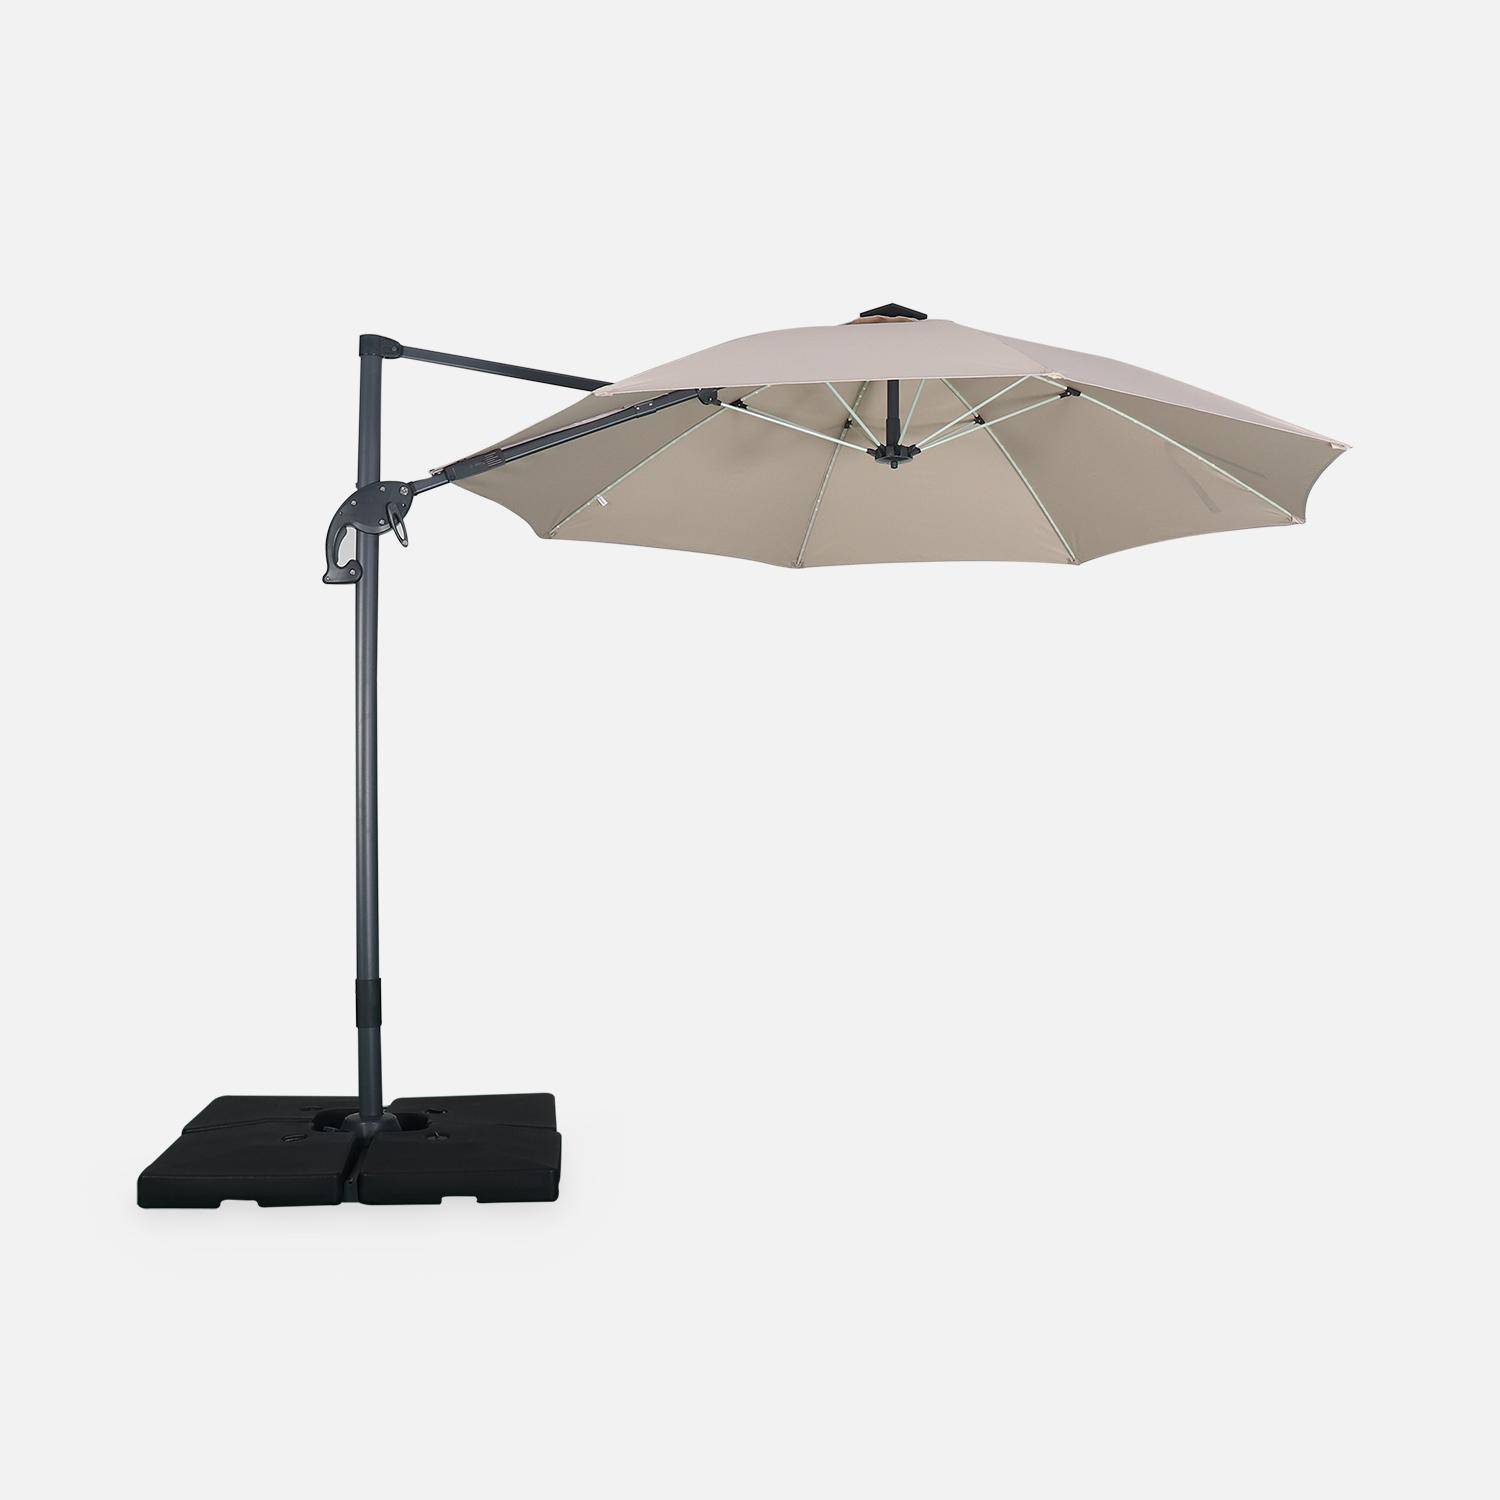 Ombrellone led tondo decentrato Ø300 cm - Dinard - Beige - ombrellone decentrato, basculante, ribaltabile e girevole 360°, stecche in fibra di vetro Photo2